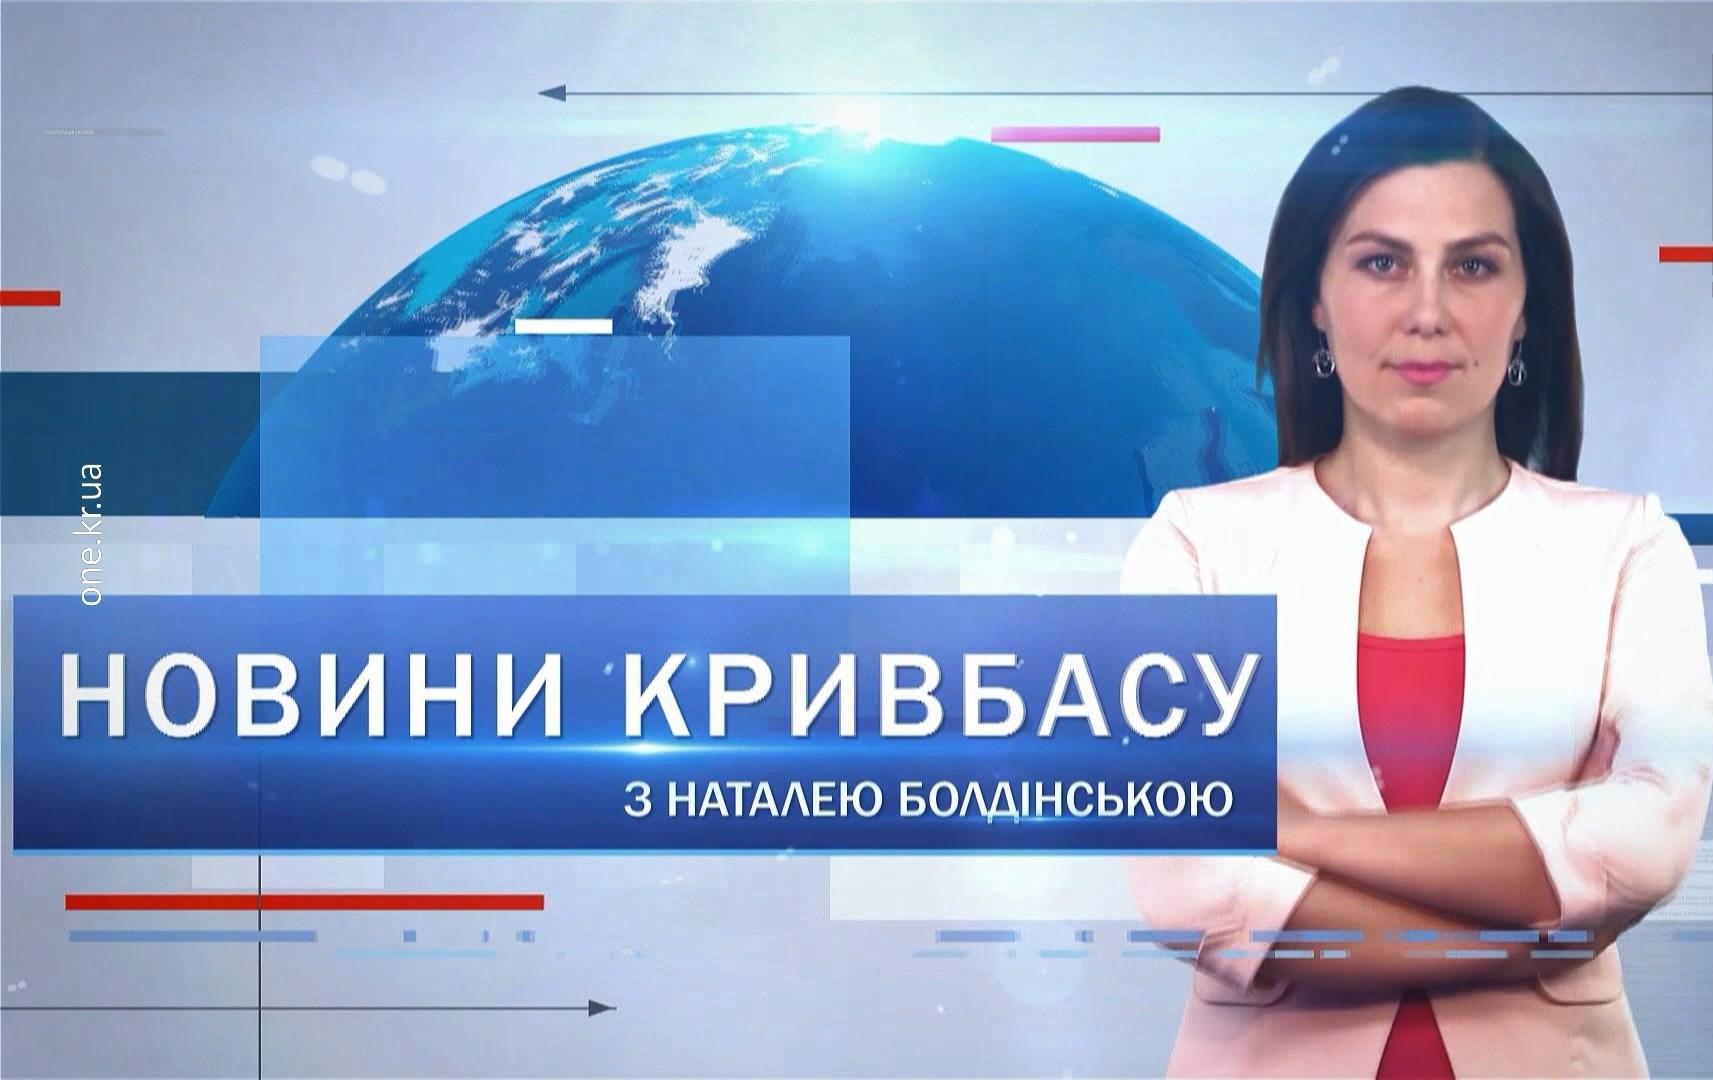 Новини Кривбасу 8 вересня 2020: COVID-19, перевірка шахт, гуманітарна допомога